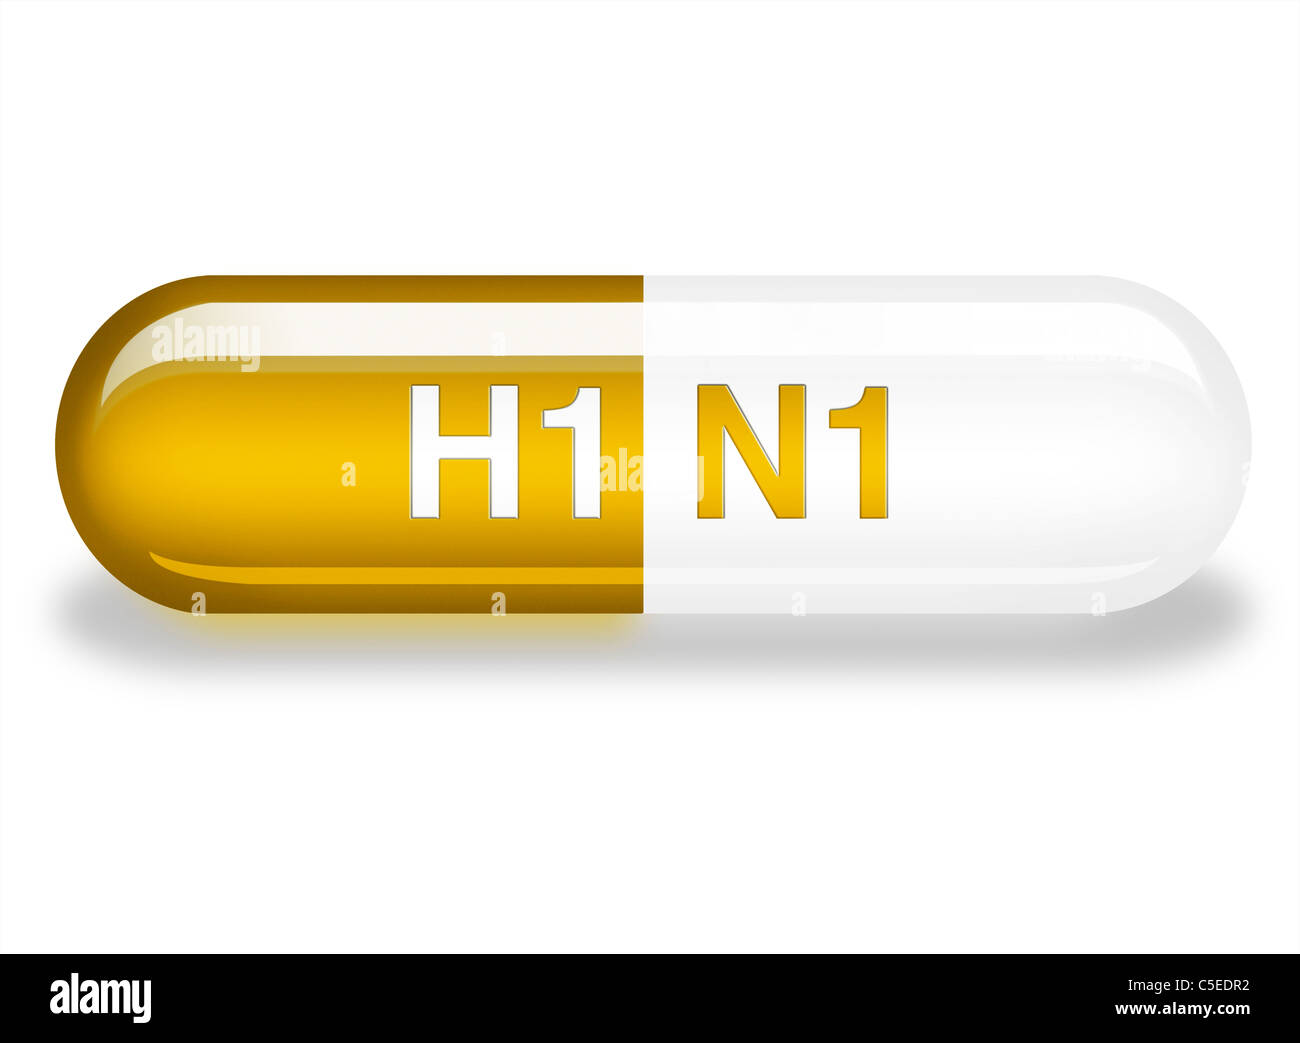 Illustrazione di un singolo Tamiflu capsule con h1n1 in rilievo su di esso. farmaco per la specie suina e influenza aviaria Foto Stock